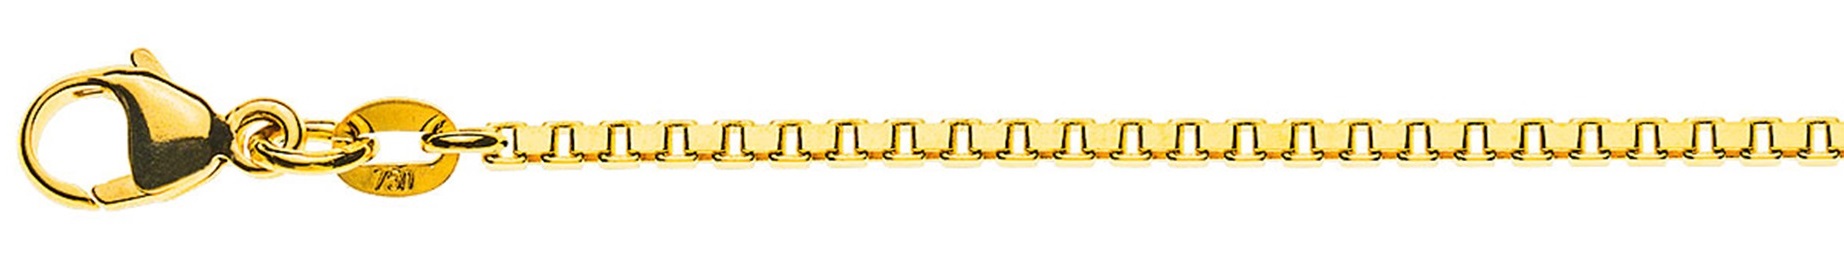 AURONOS Prestige Collier en or jaune 18K vénitien diamanté 50cm 1.6mm